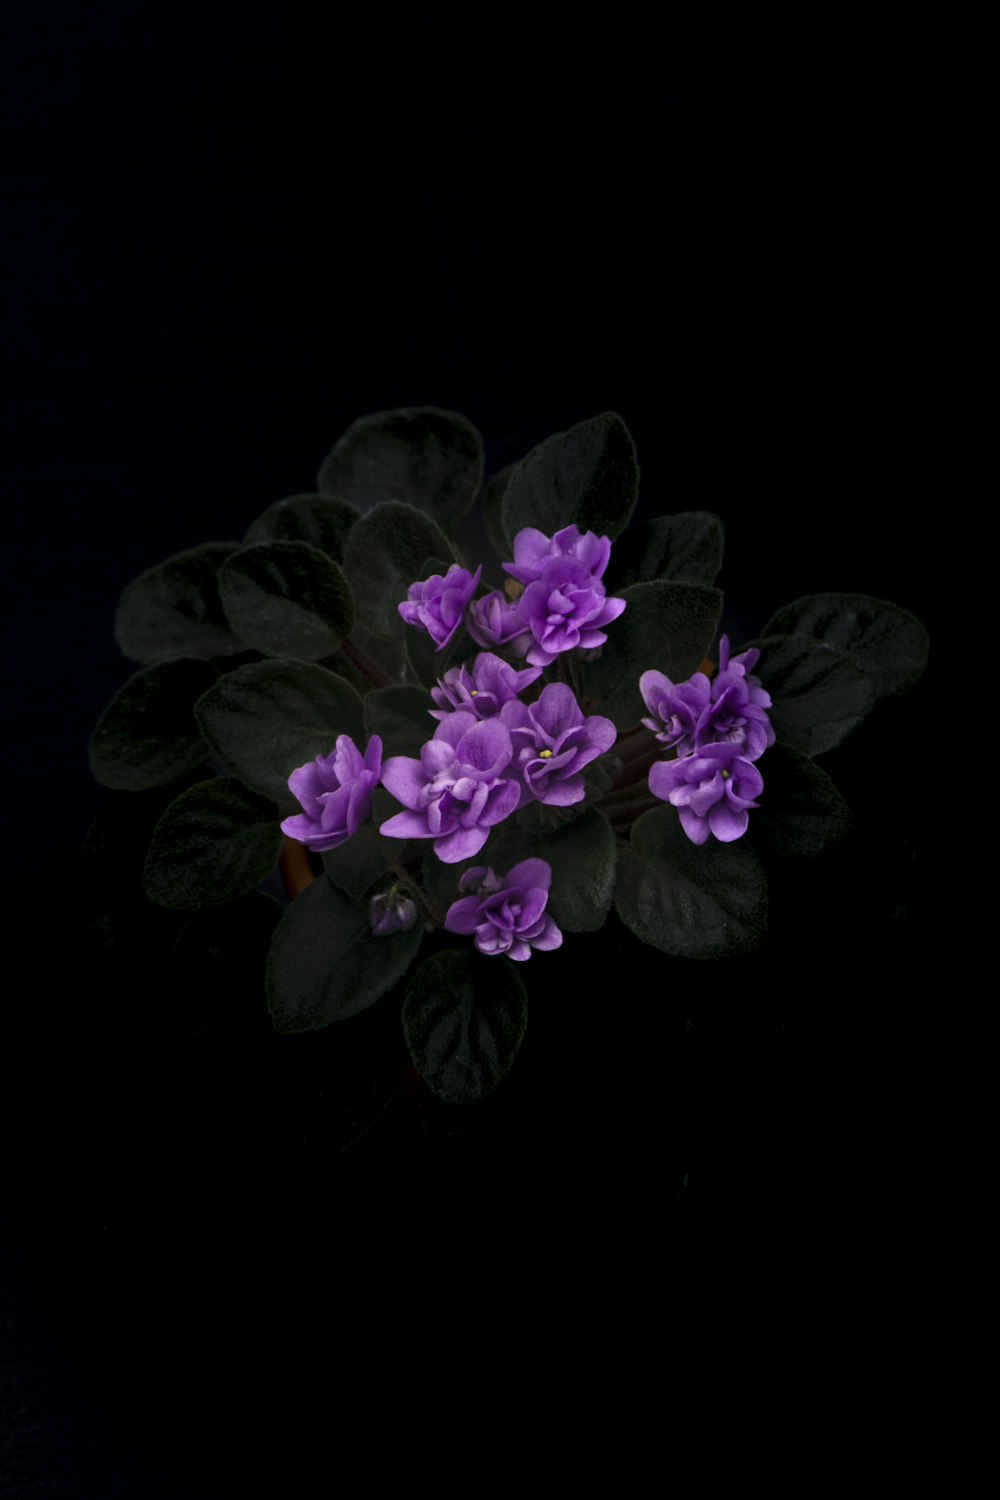 Photographie en gros plan d’une fleur aux pétales violets